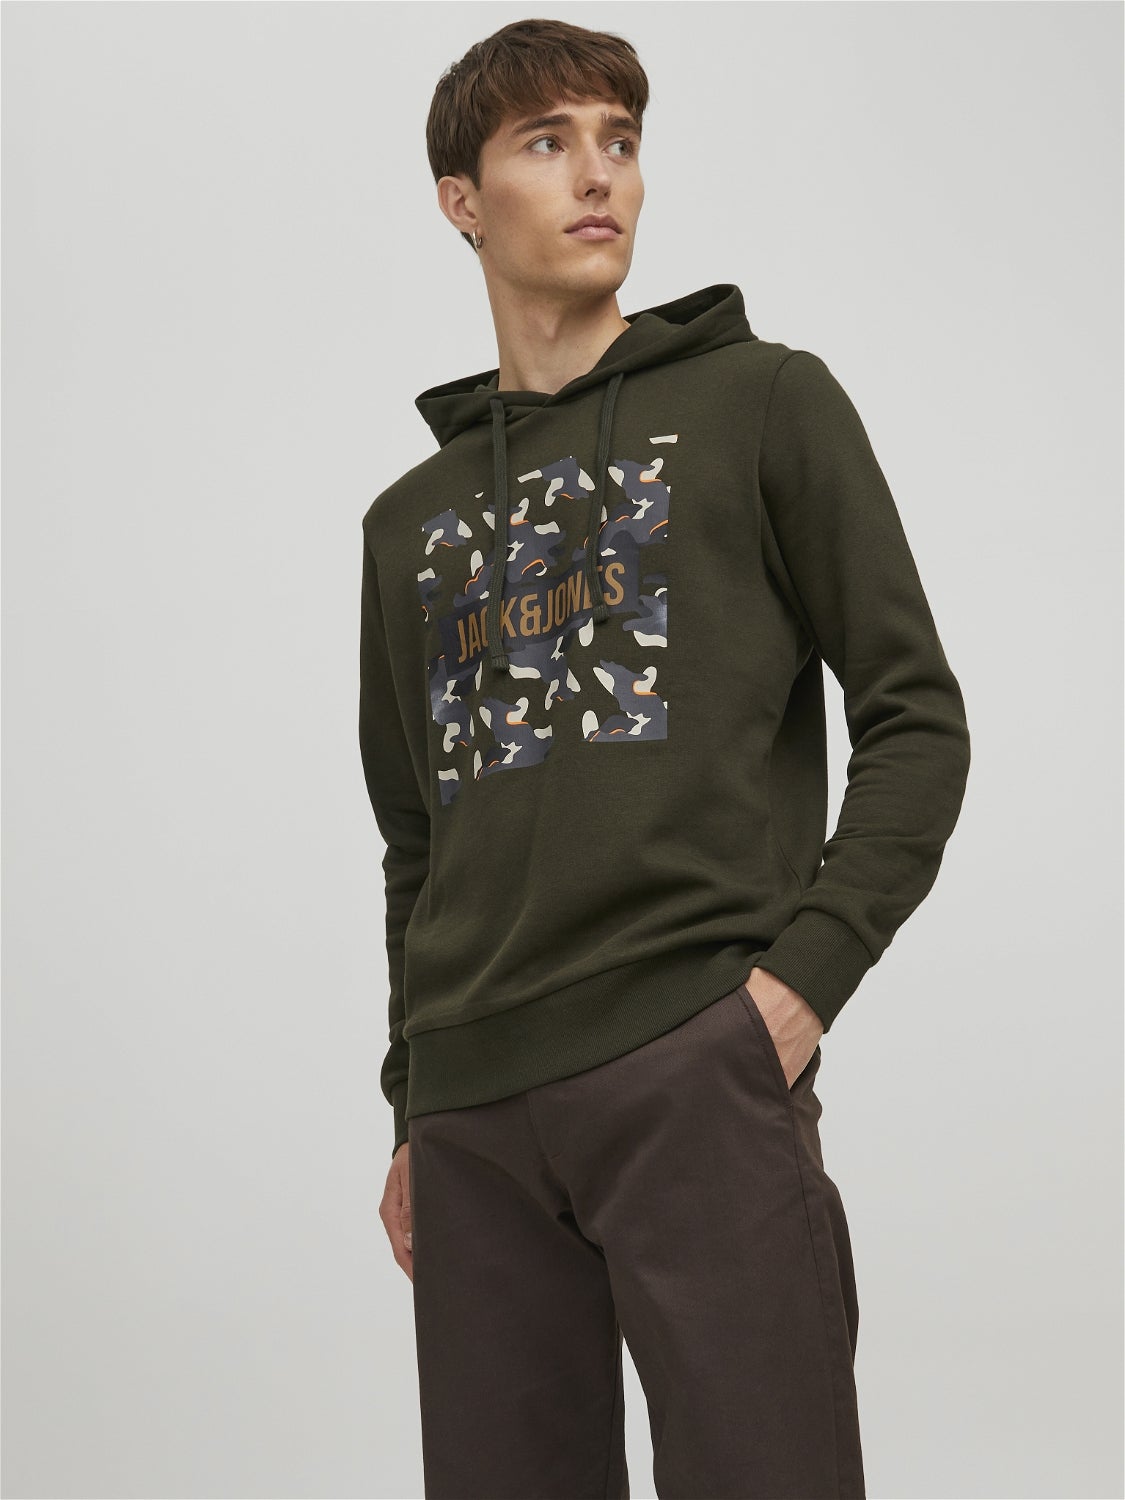 Grün L Jack & Jones sweatshirt Rabatt 57 % HERREN Pullovers & Sweatshirts Ohne Kapuze 